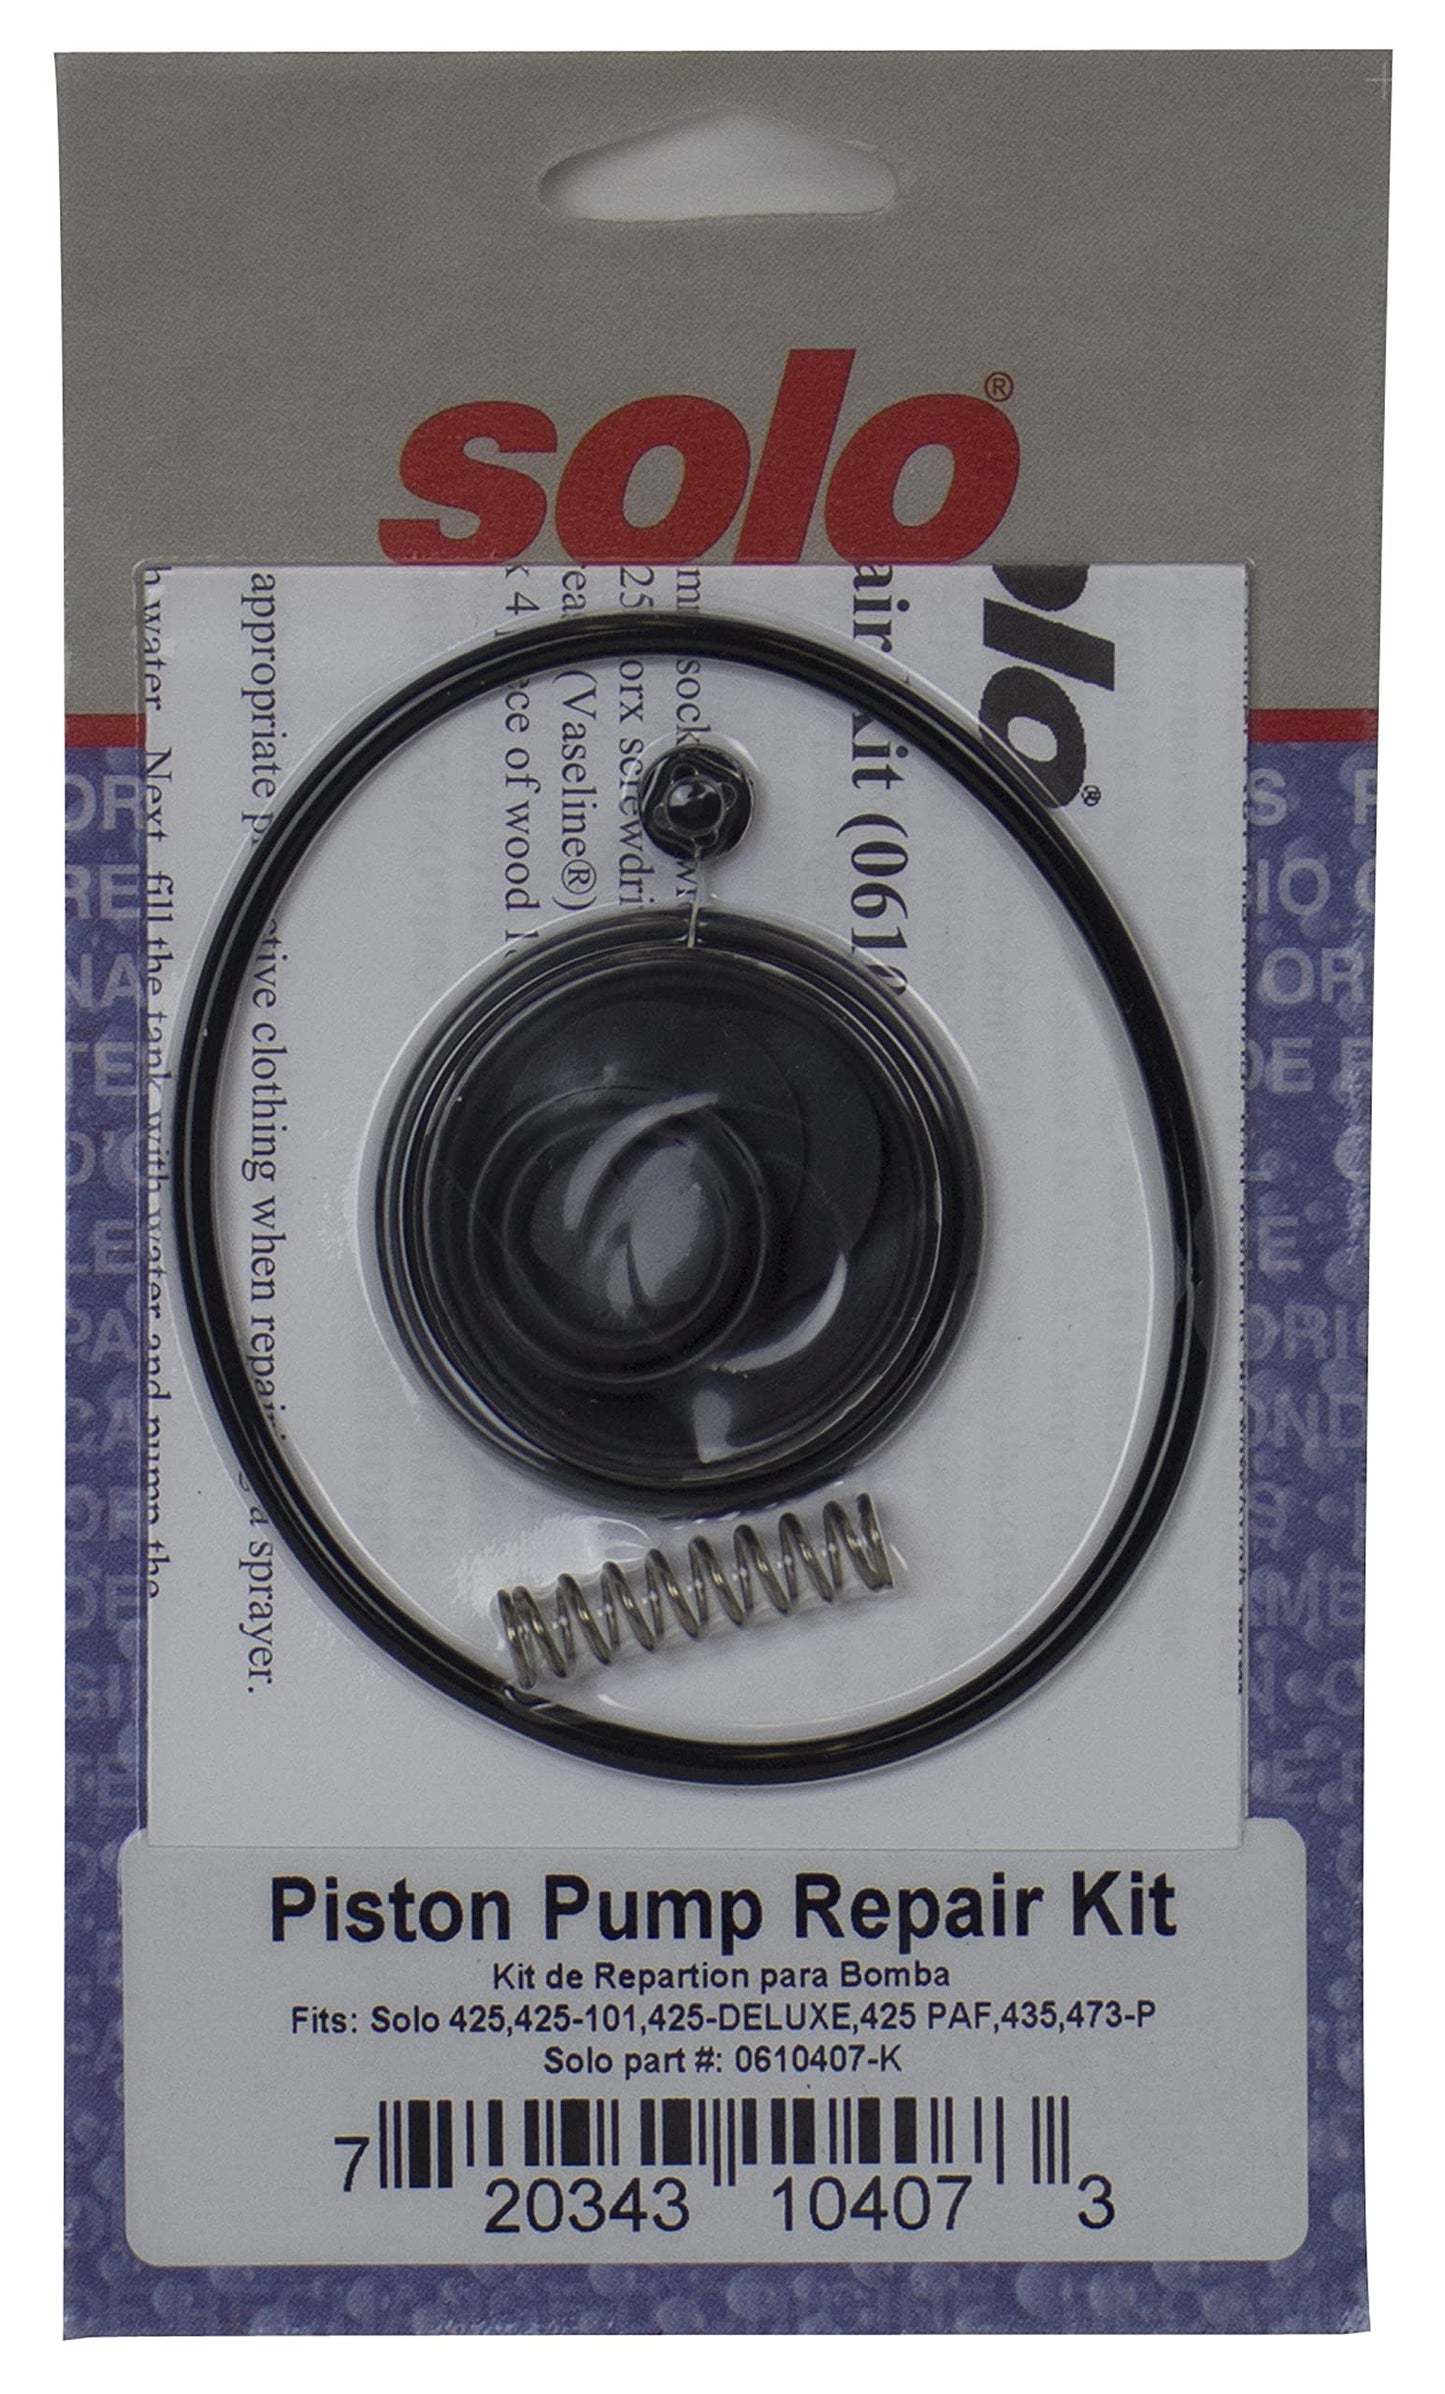 Solo 0610407-K Kit de réparation de pompe de pulvérisateur à piston